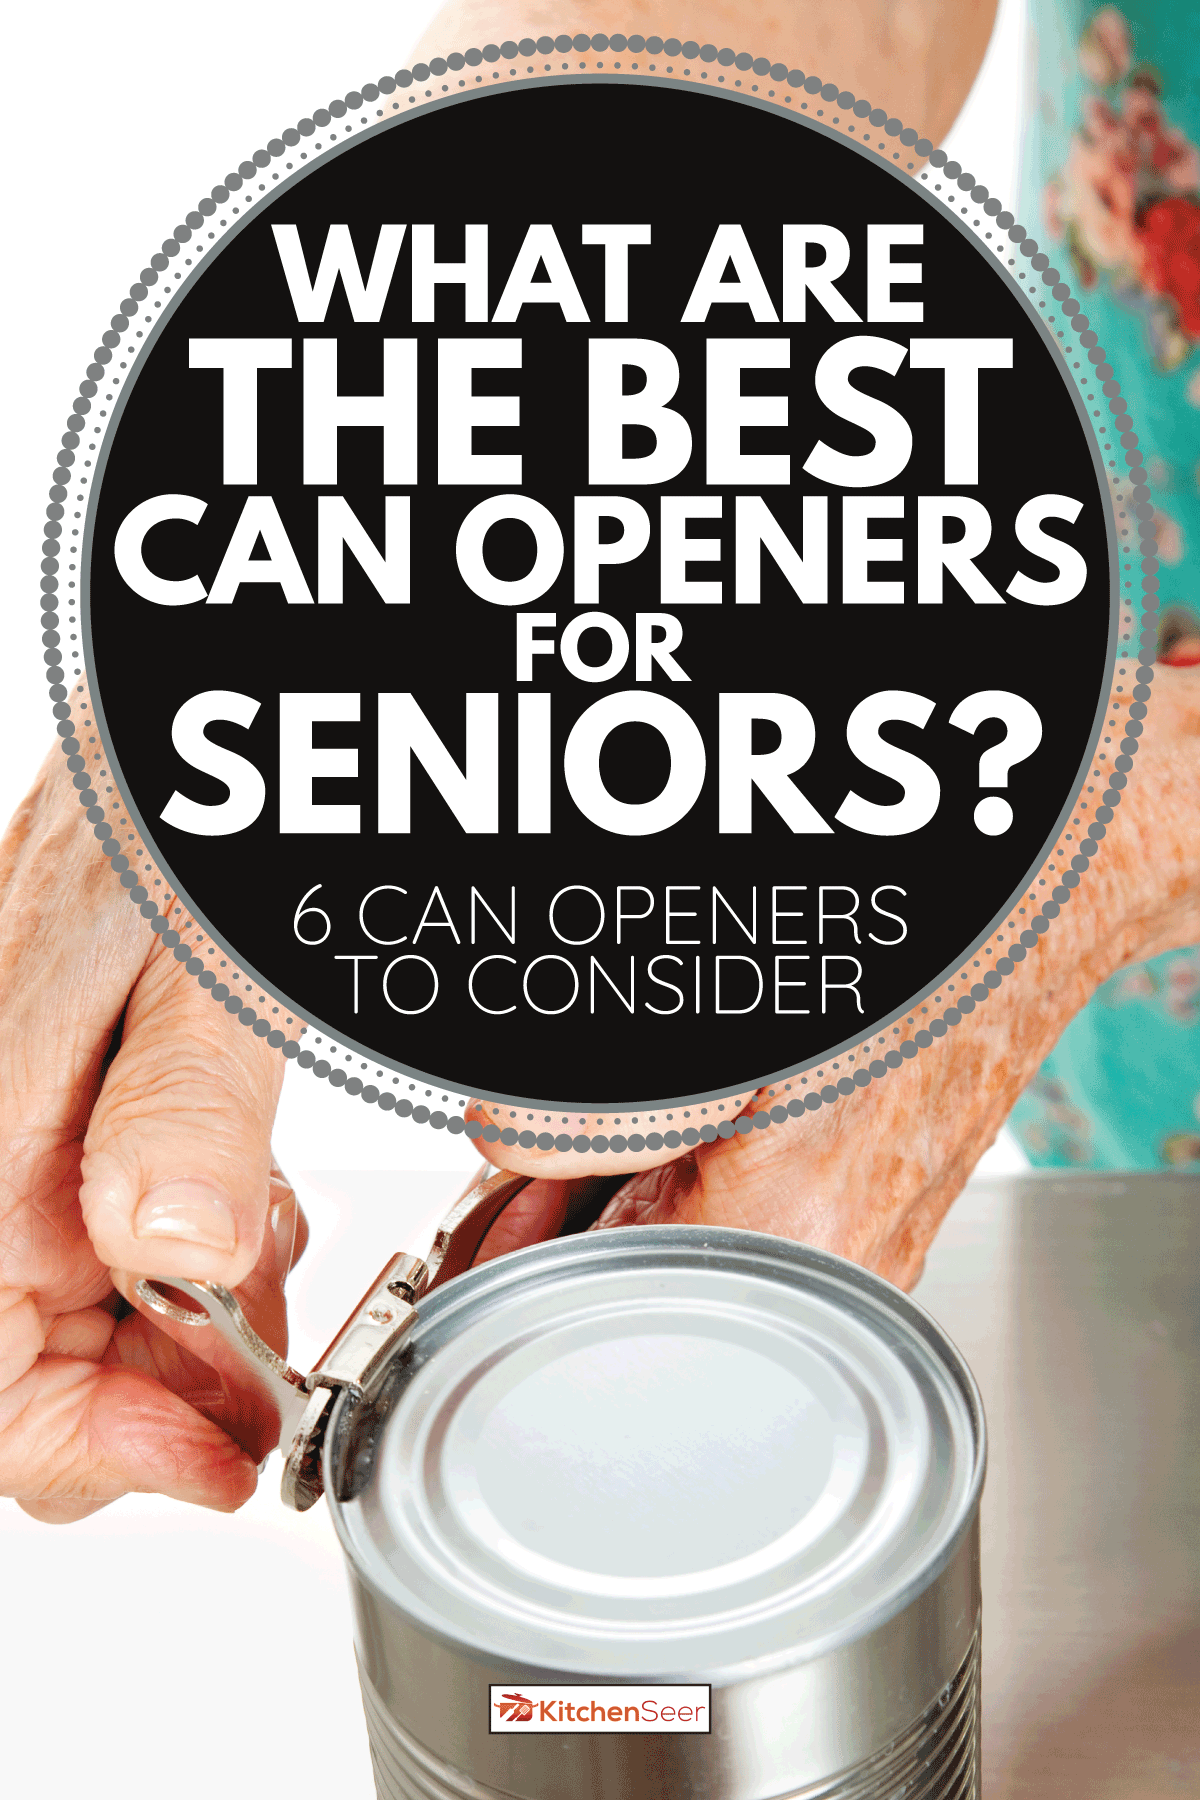 患有关节炎的老妇人用开罐器打开罐头。对老年人来说最好的开罐器是什么[6个可以考虑的开罐器]